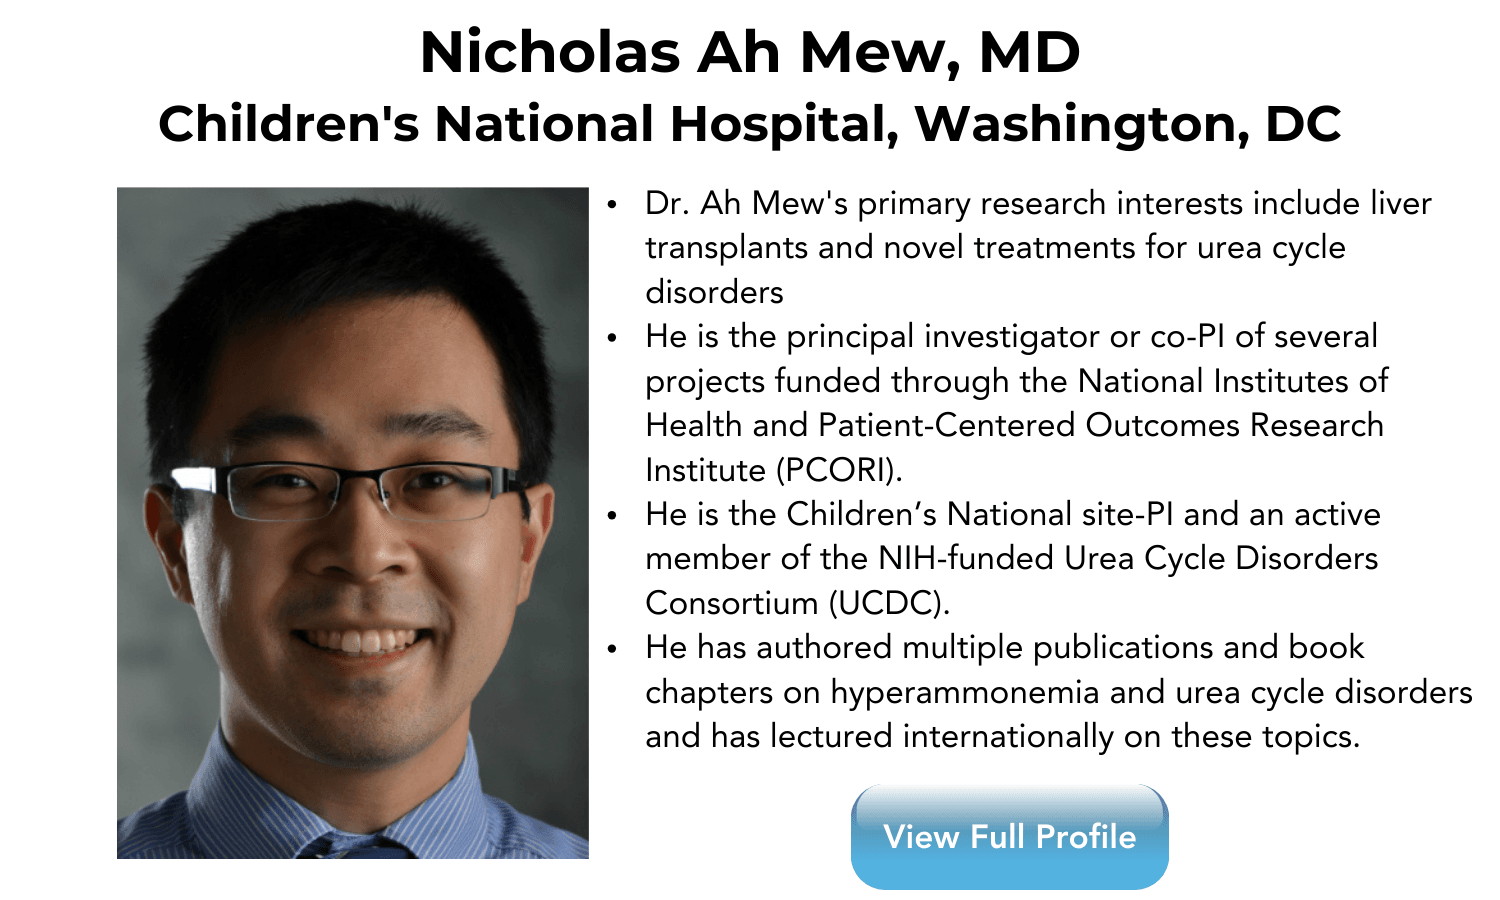 Nicholas Ah Mew, MD